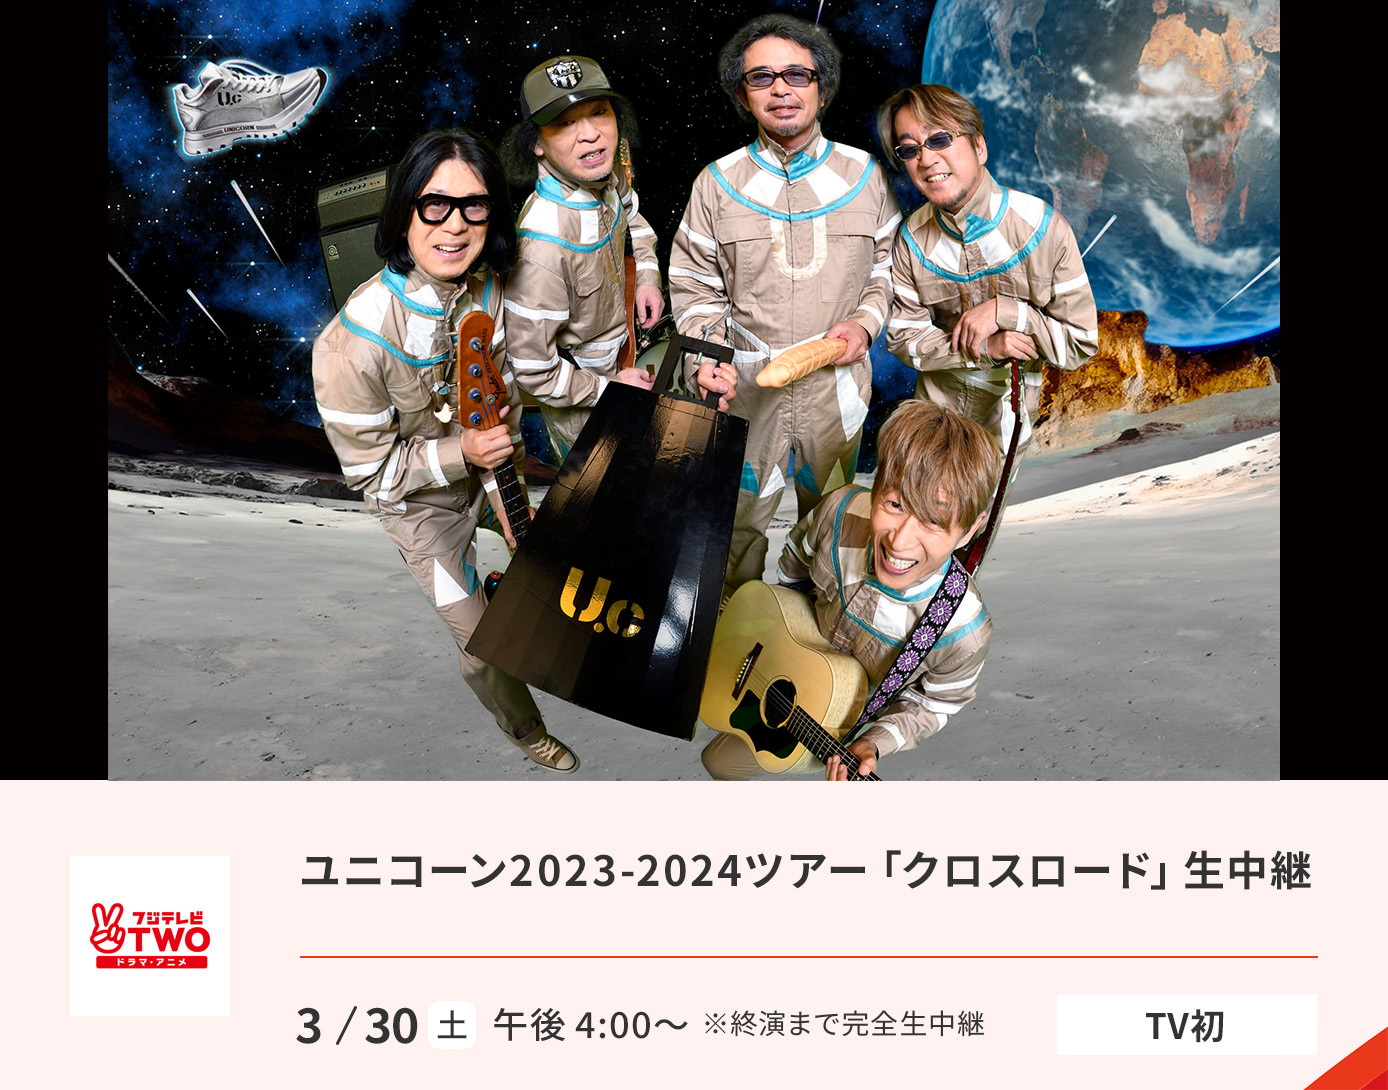 ユニコーン2023-2024ツアー「クロスロード」生中継